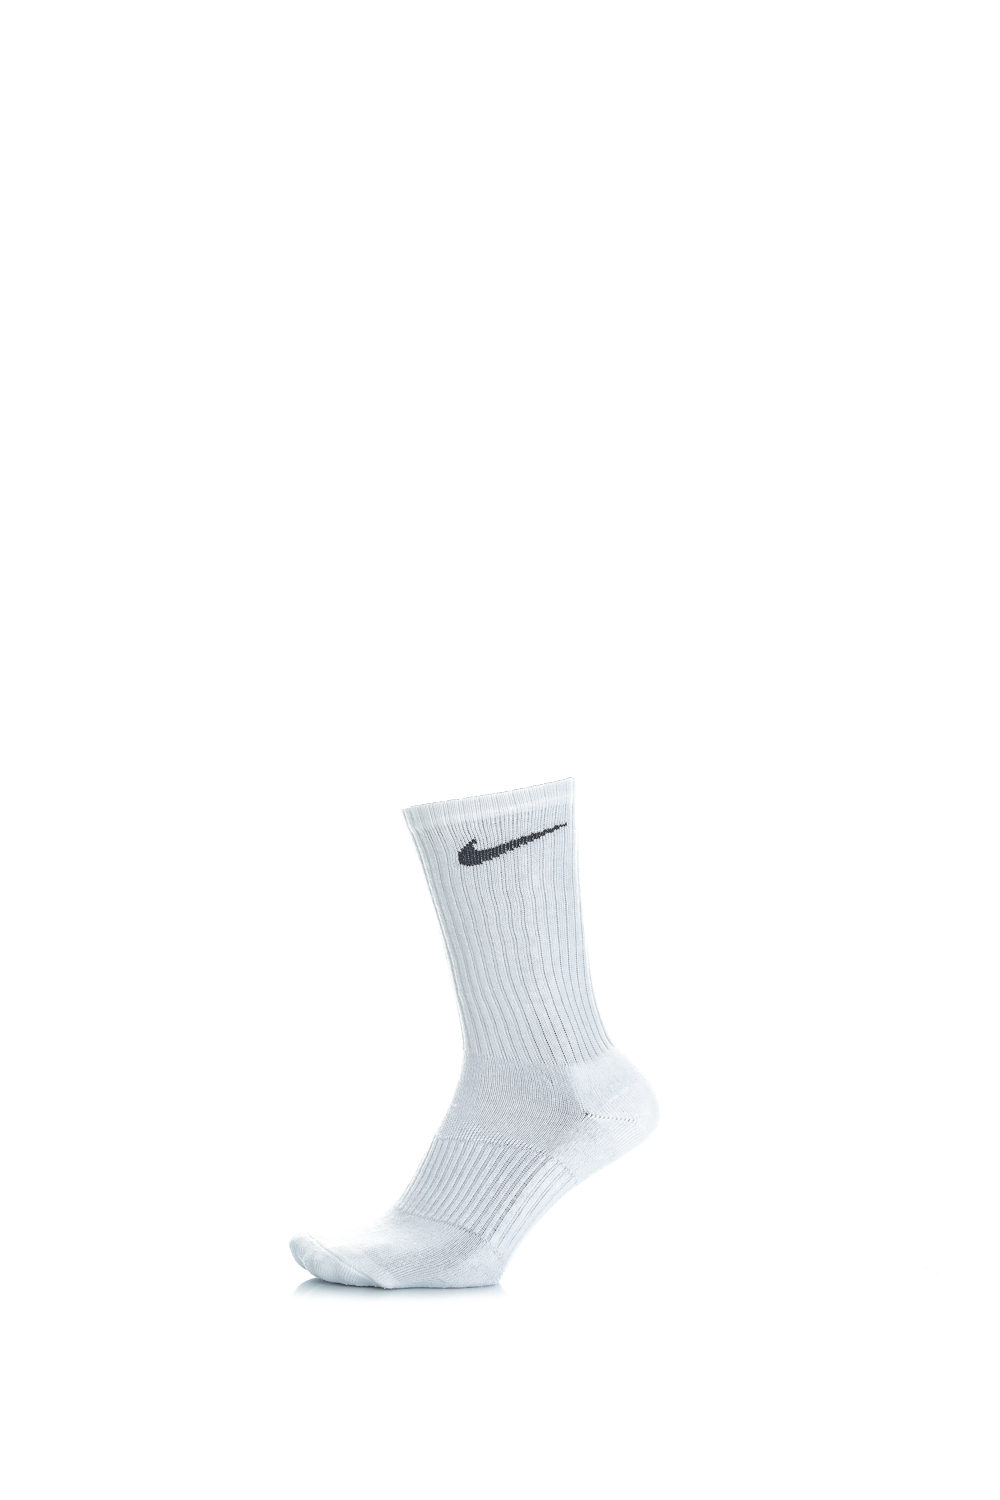 Γυναικεία/Αξεσουάρ/Κάλτσες NIKE - Σετ από 3 ζευγάρια κάλτσες λευκές